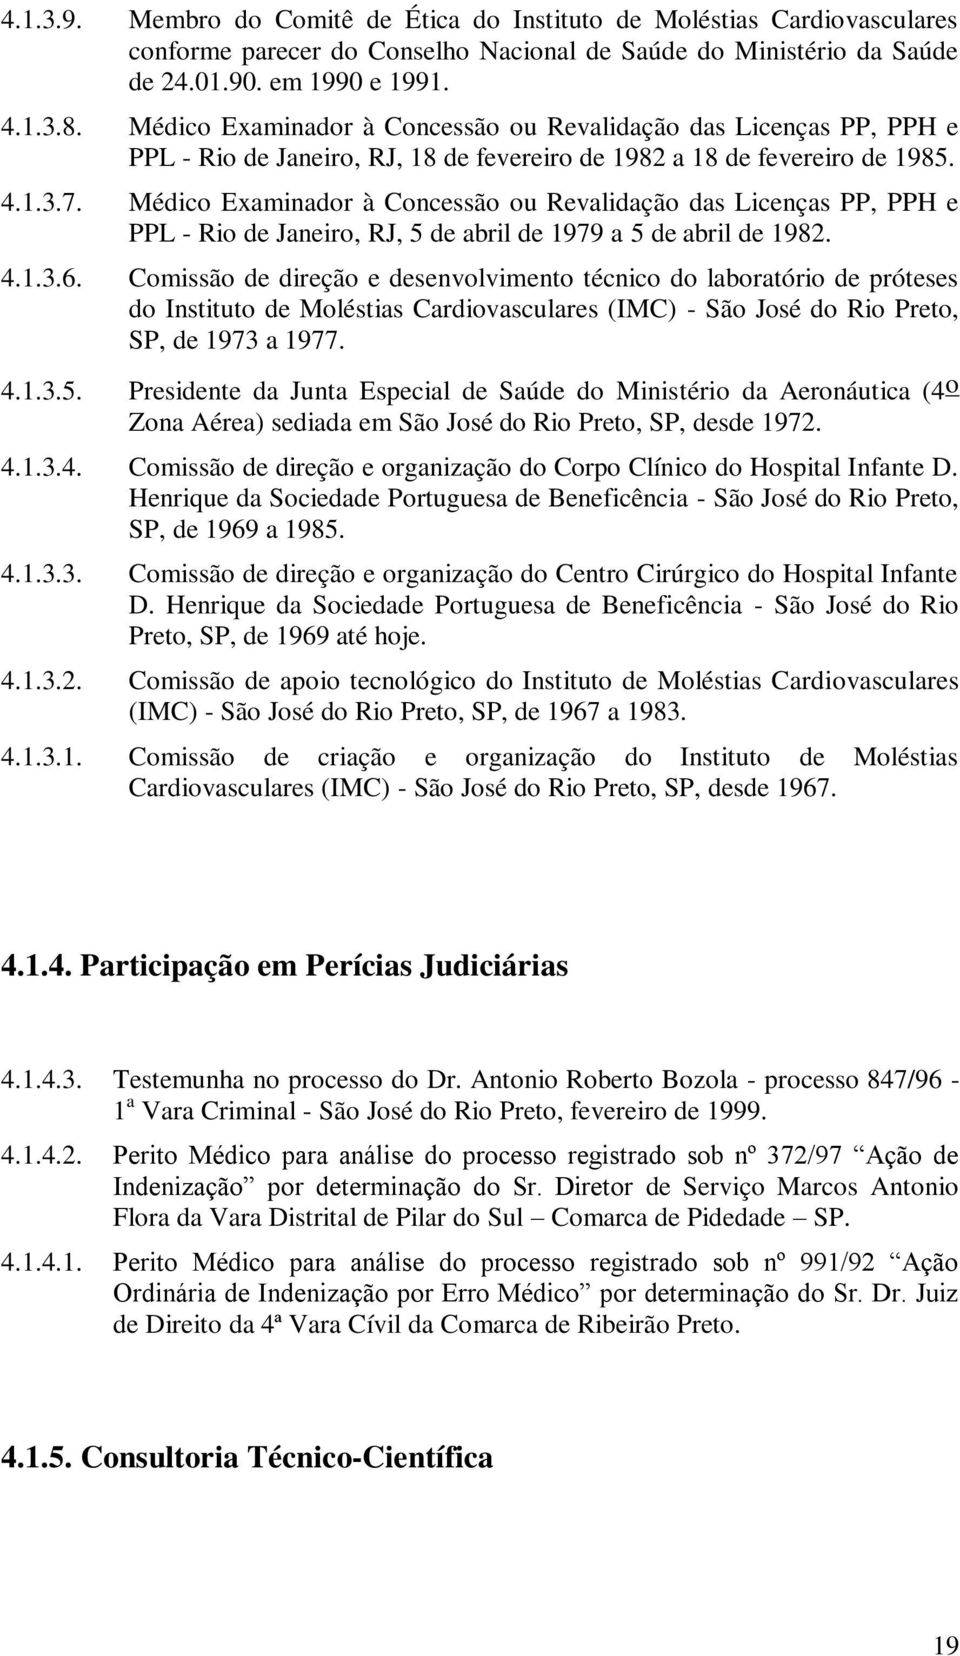 Médico Examinador à Concessão ou Revalidação das Licenças PP, PPH e PPL - Rio de Janeiro, RJ, 5 de abril de 1979 a 5 de abril de 1982. 4.1.3.6.